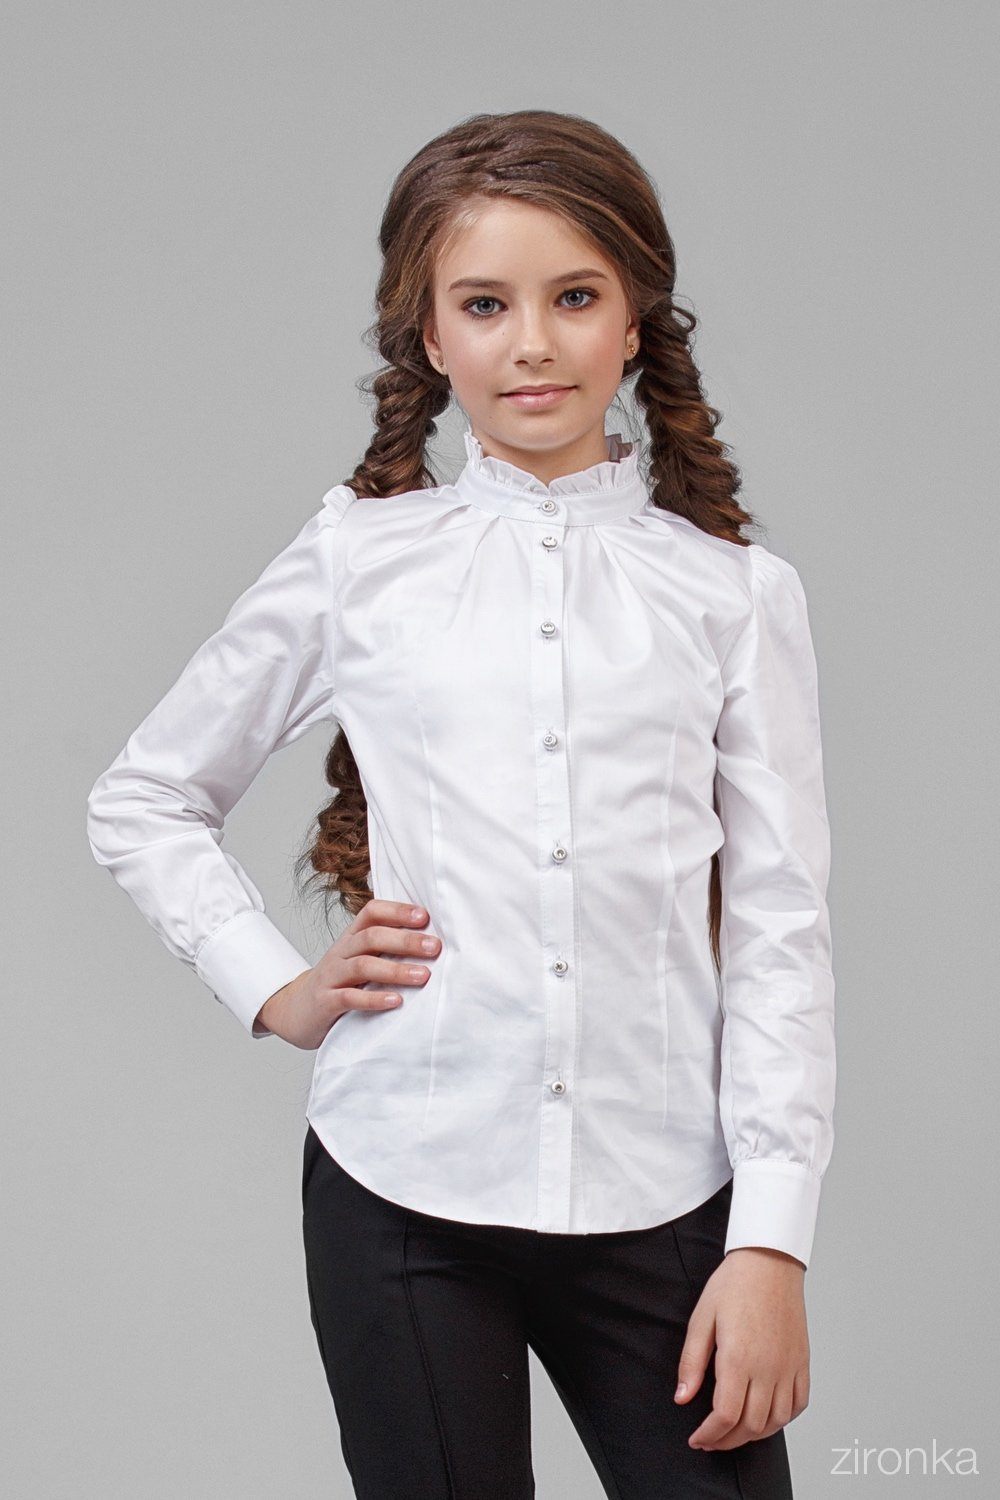 Школьная блузка купить. Школьная блузка. Блузка Школьная для девочек. Белая блузка для девочки. Белые блузки для девочек в школу.